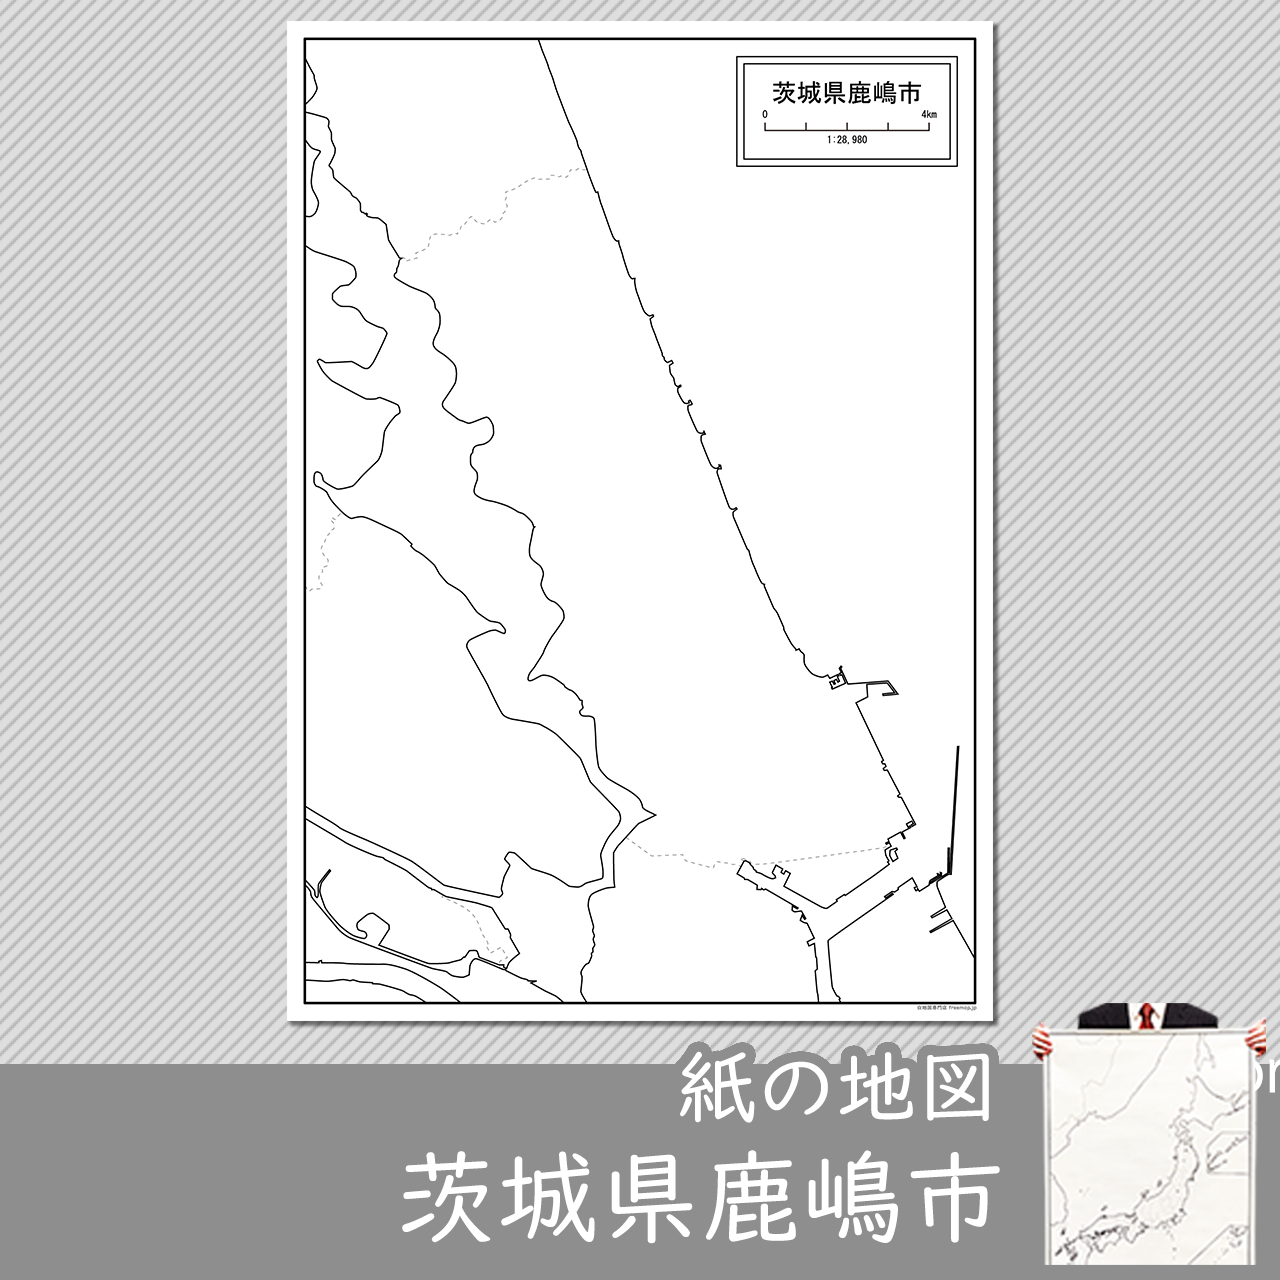 鹿嶋市の紙の白地図のサムネイル